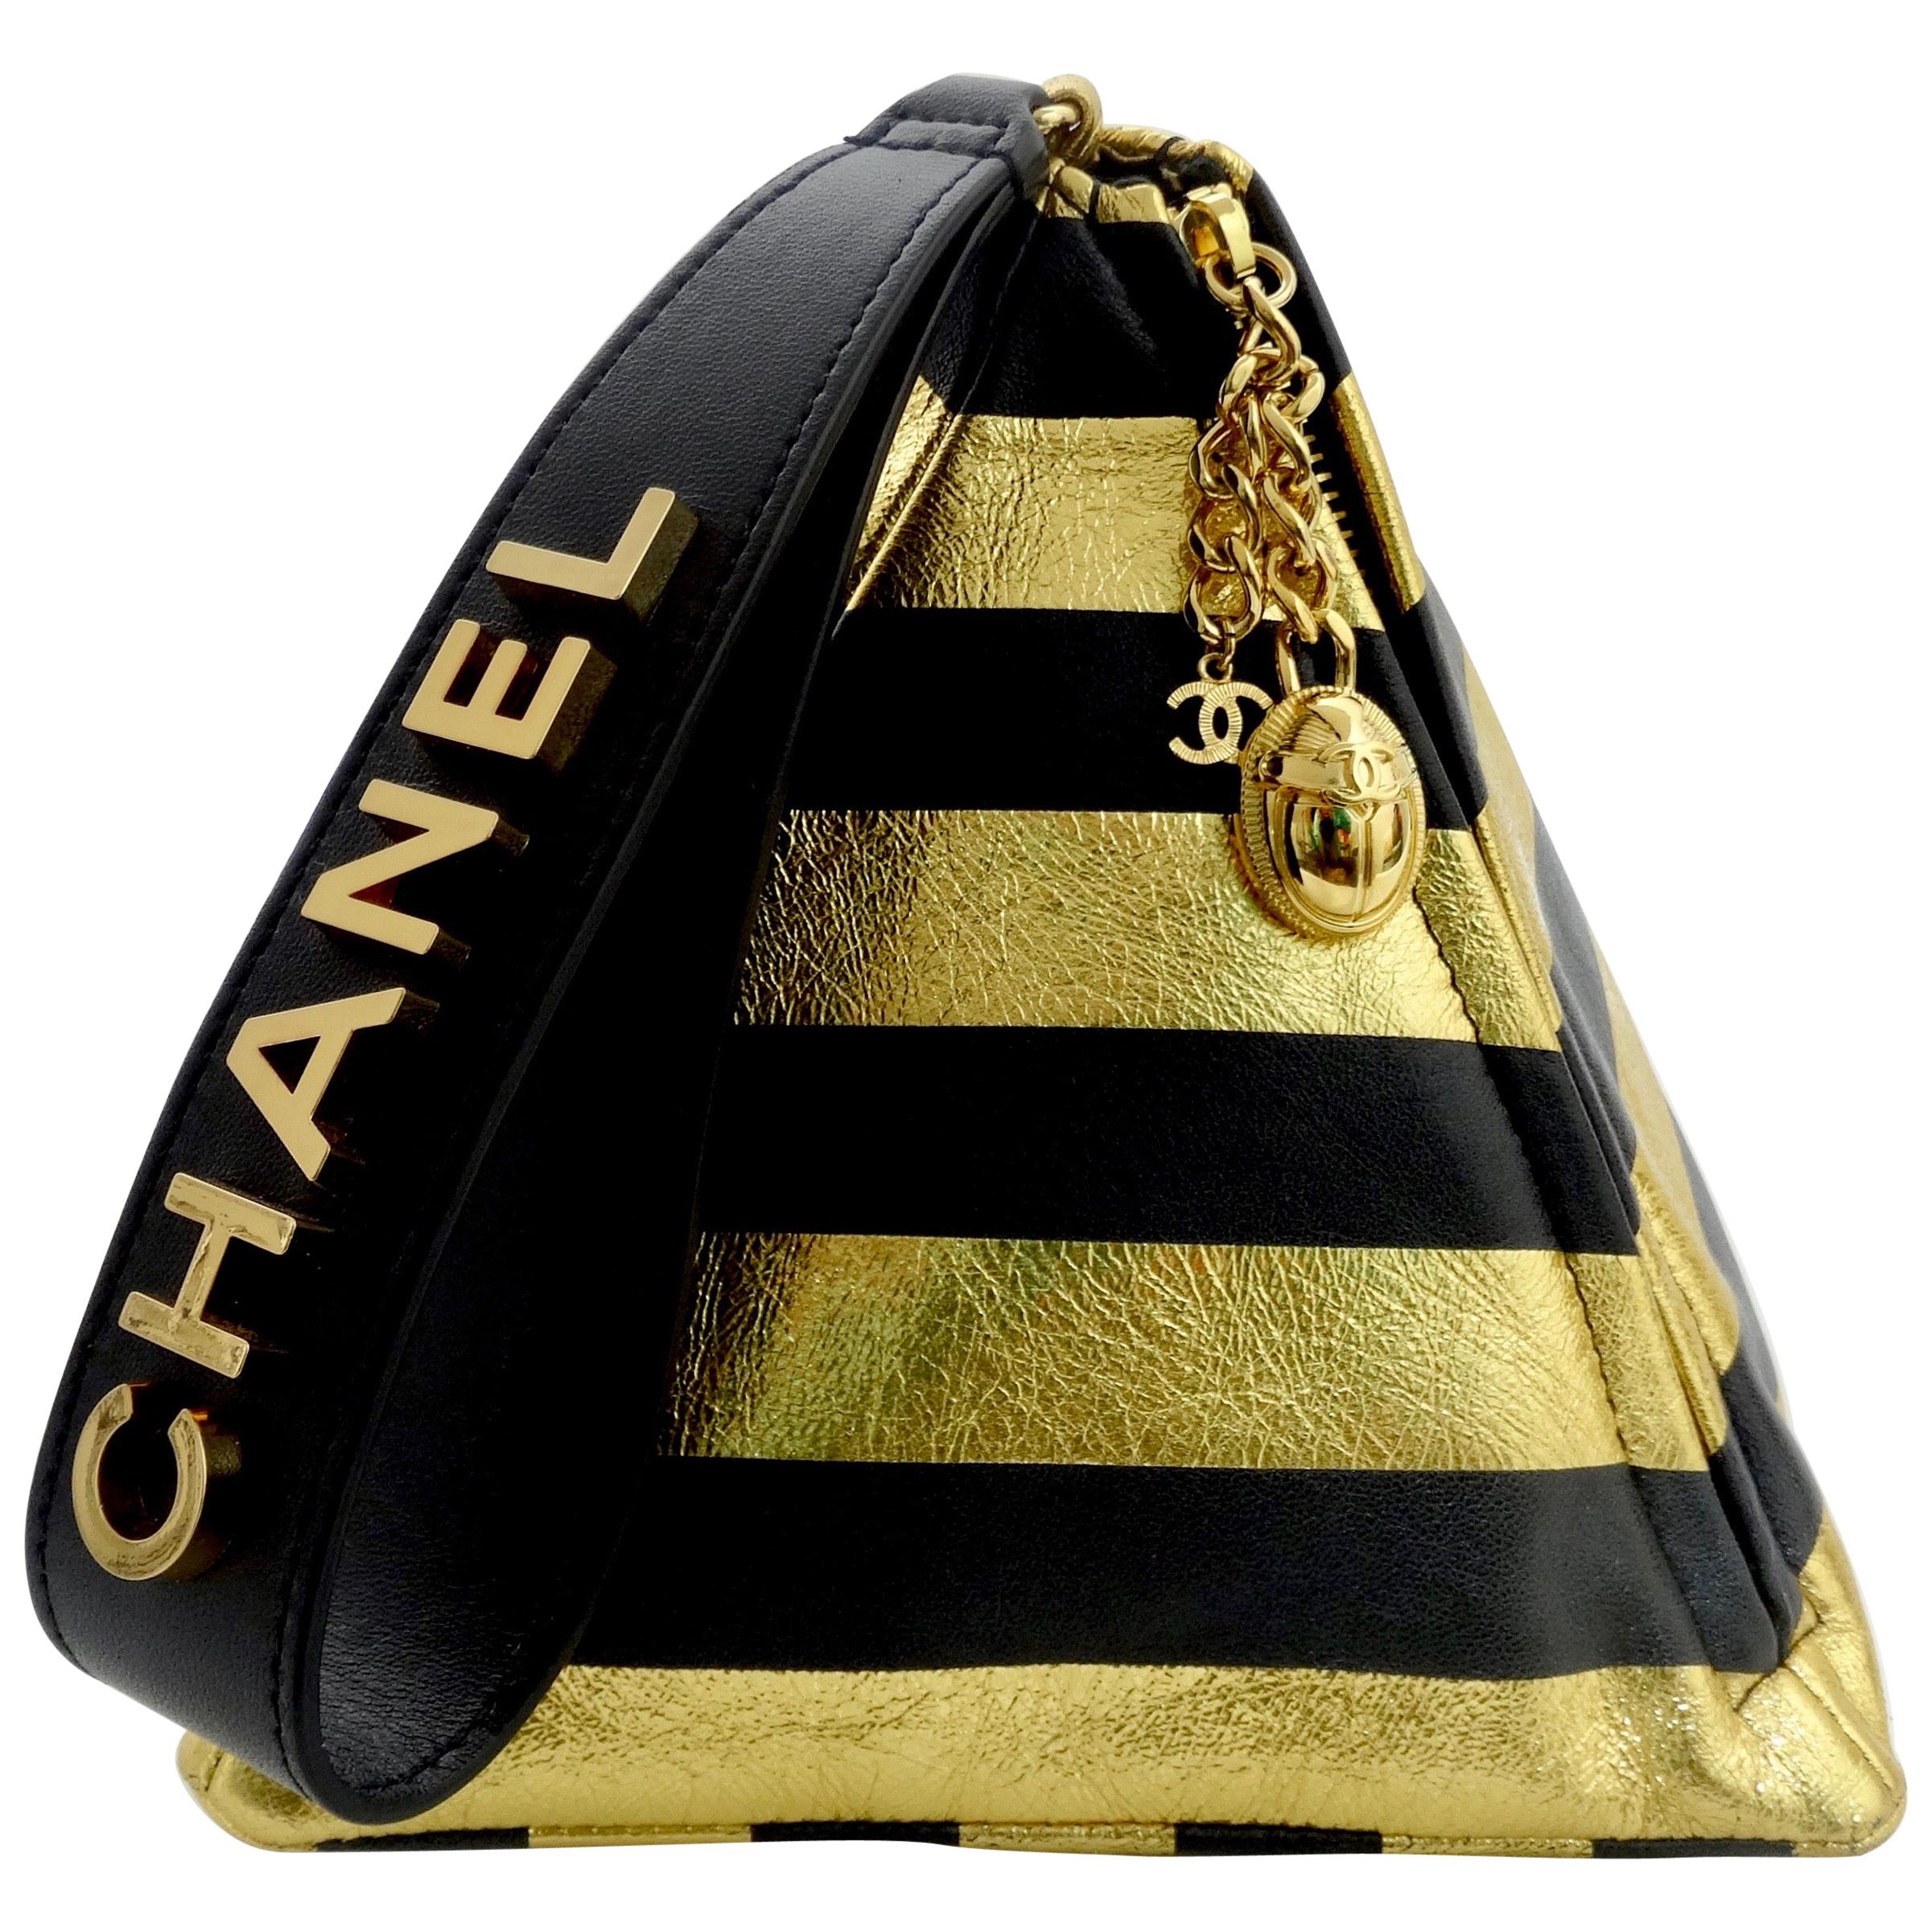 Chanel 2019 Pre-Fall Kheops Pyramid Handbag